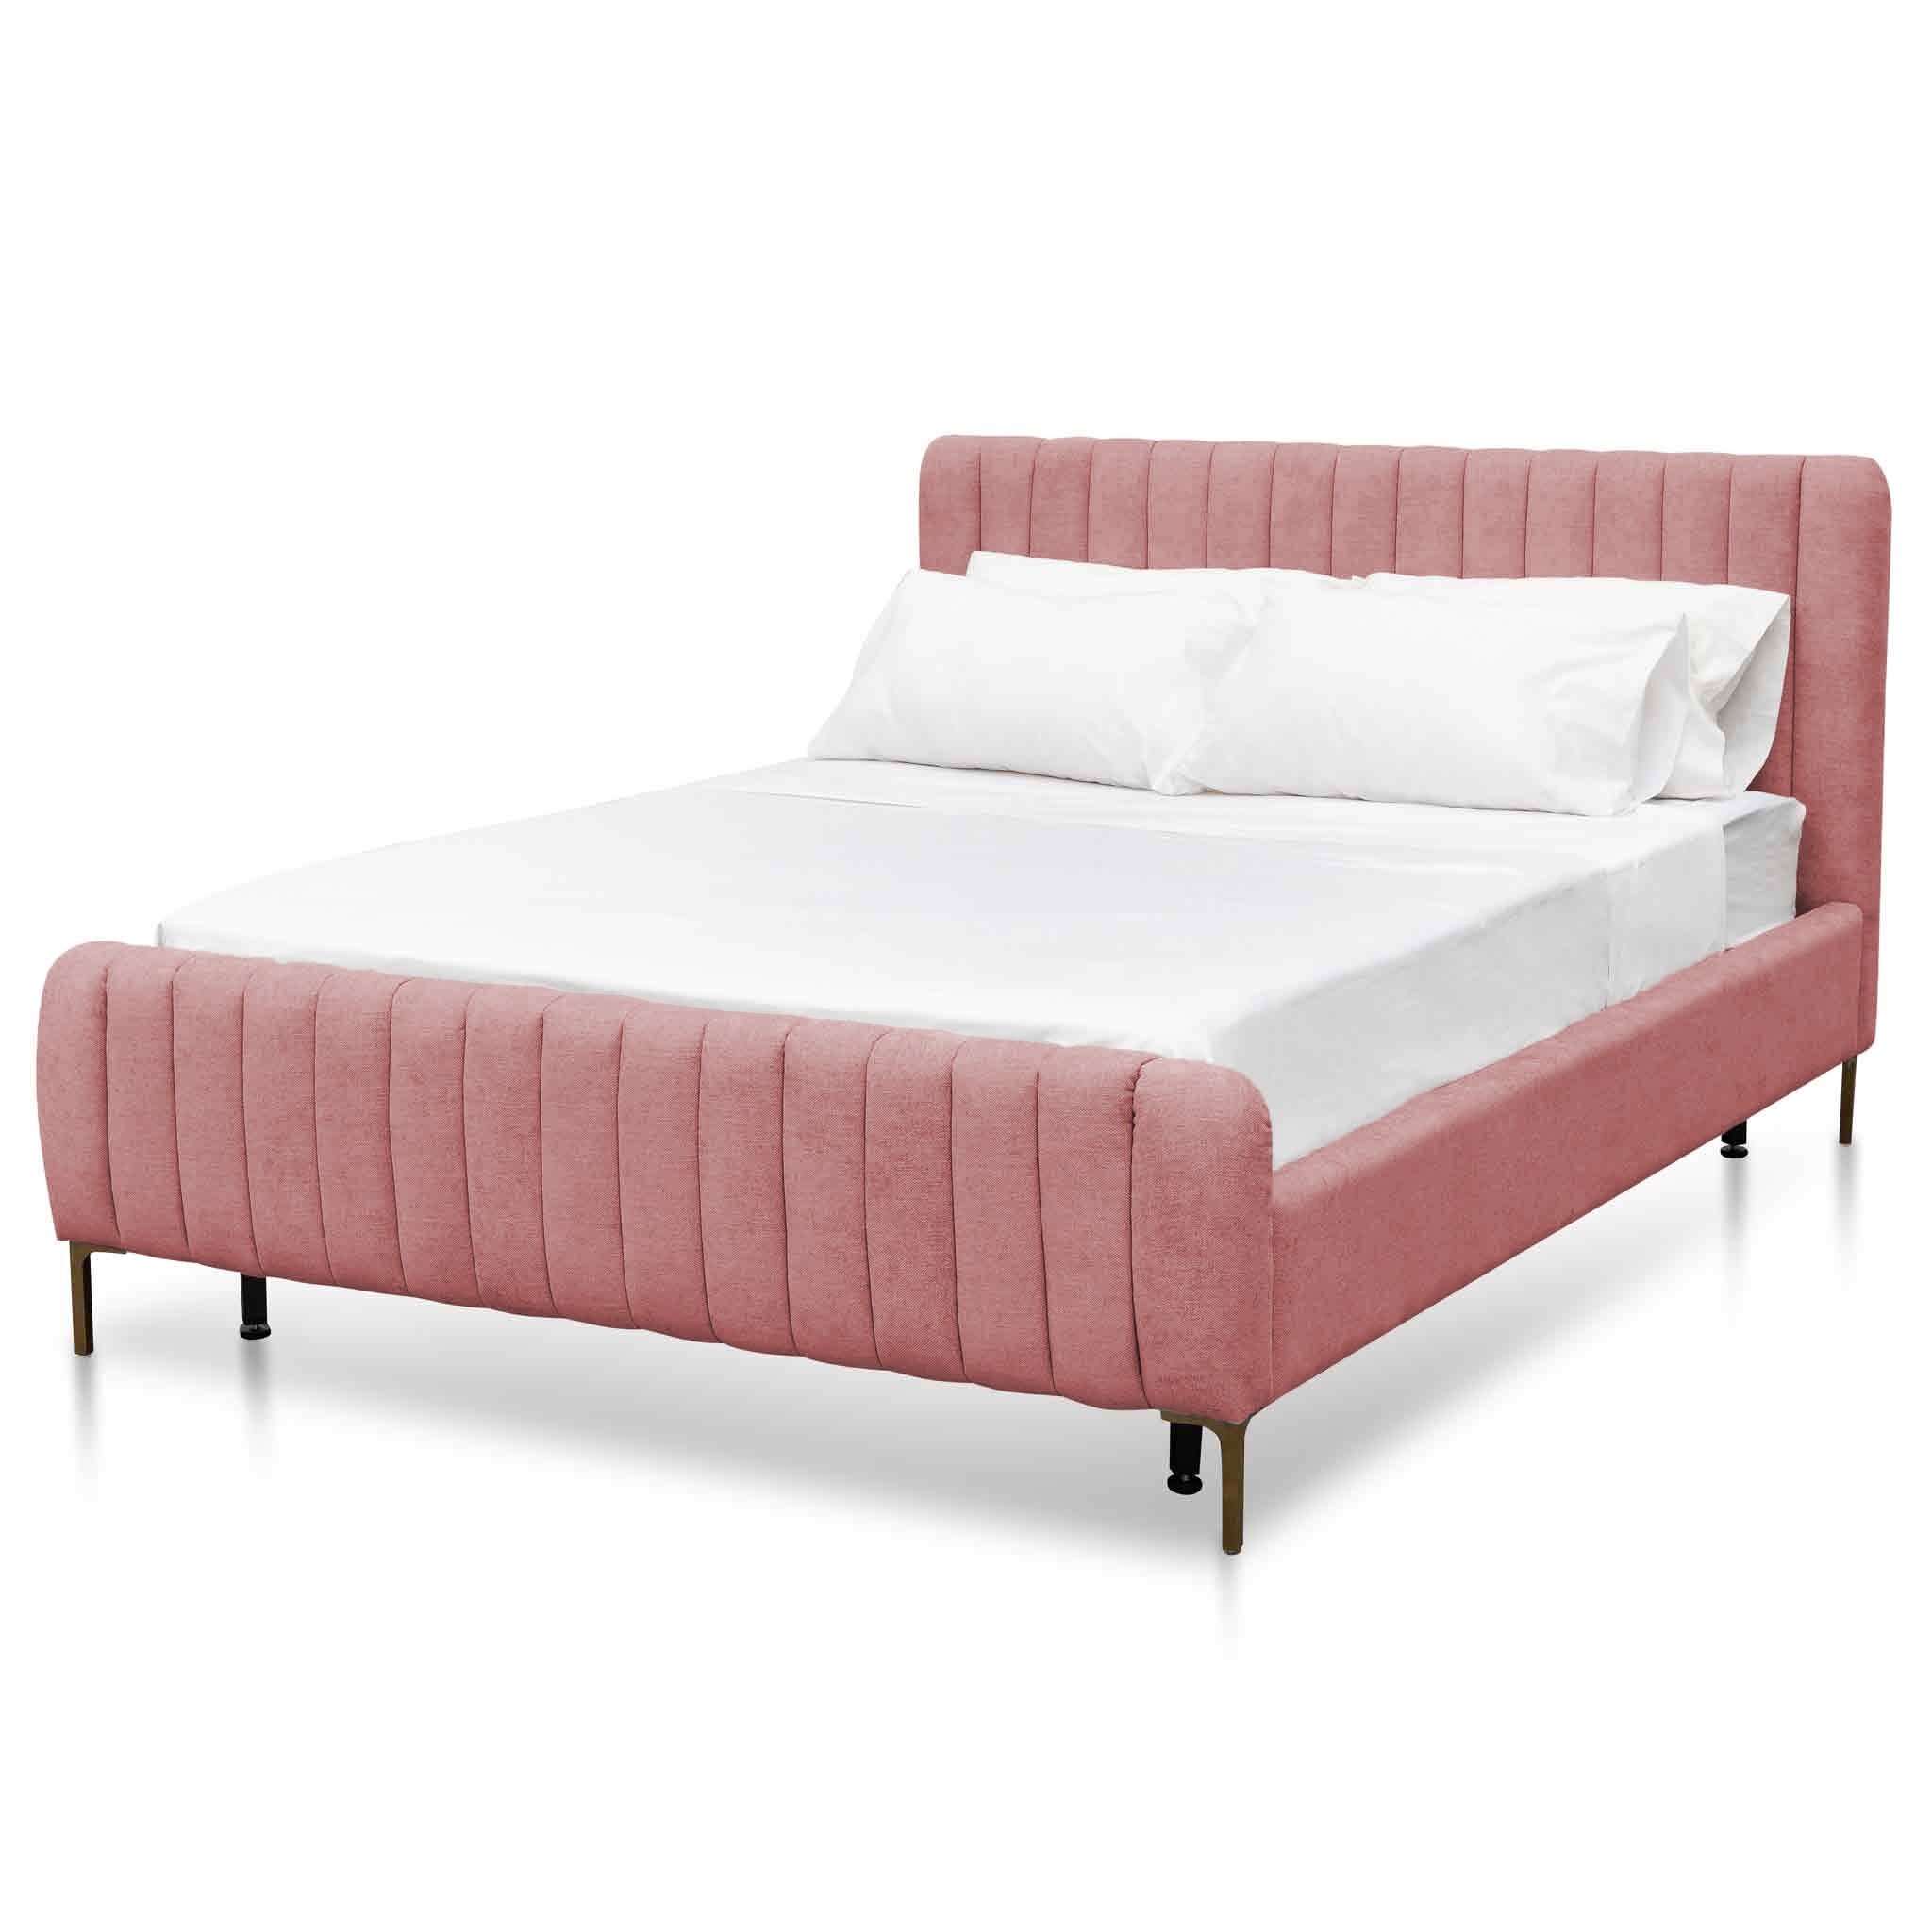 Queen Sized Bed Frame – Blush Peach Velvet